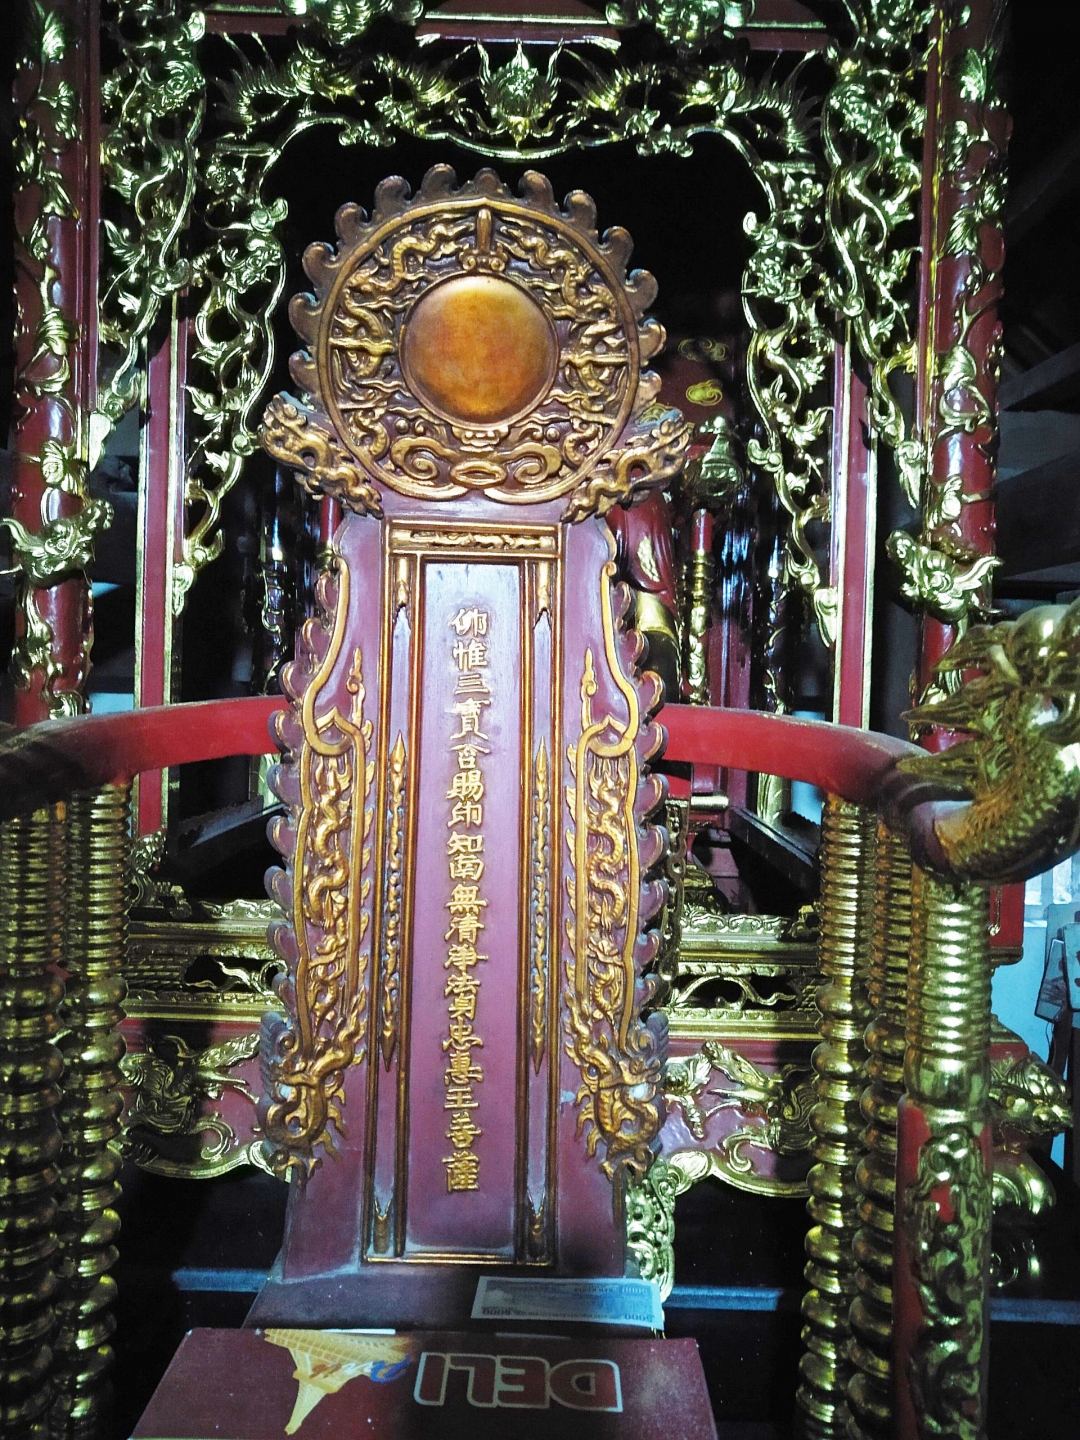 Hậu cung và bài vị trên ngai thờ Chiêu Văn Vương, trang trí trên kiến trúc, cổ vật  mang đặc trưng phong cách nghệ thuật thời Lê Trung Hưng.